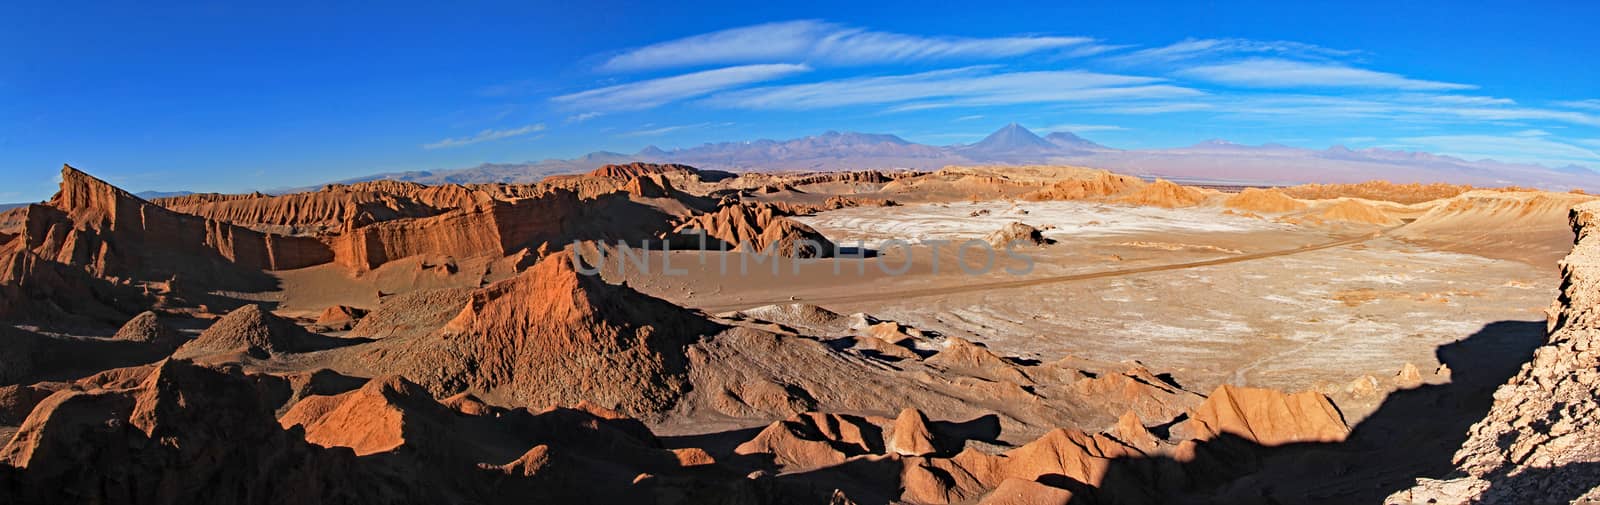 Amphitheater, valle de la Luna, valley of the moon, Atacama desert Chile by cicloco